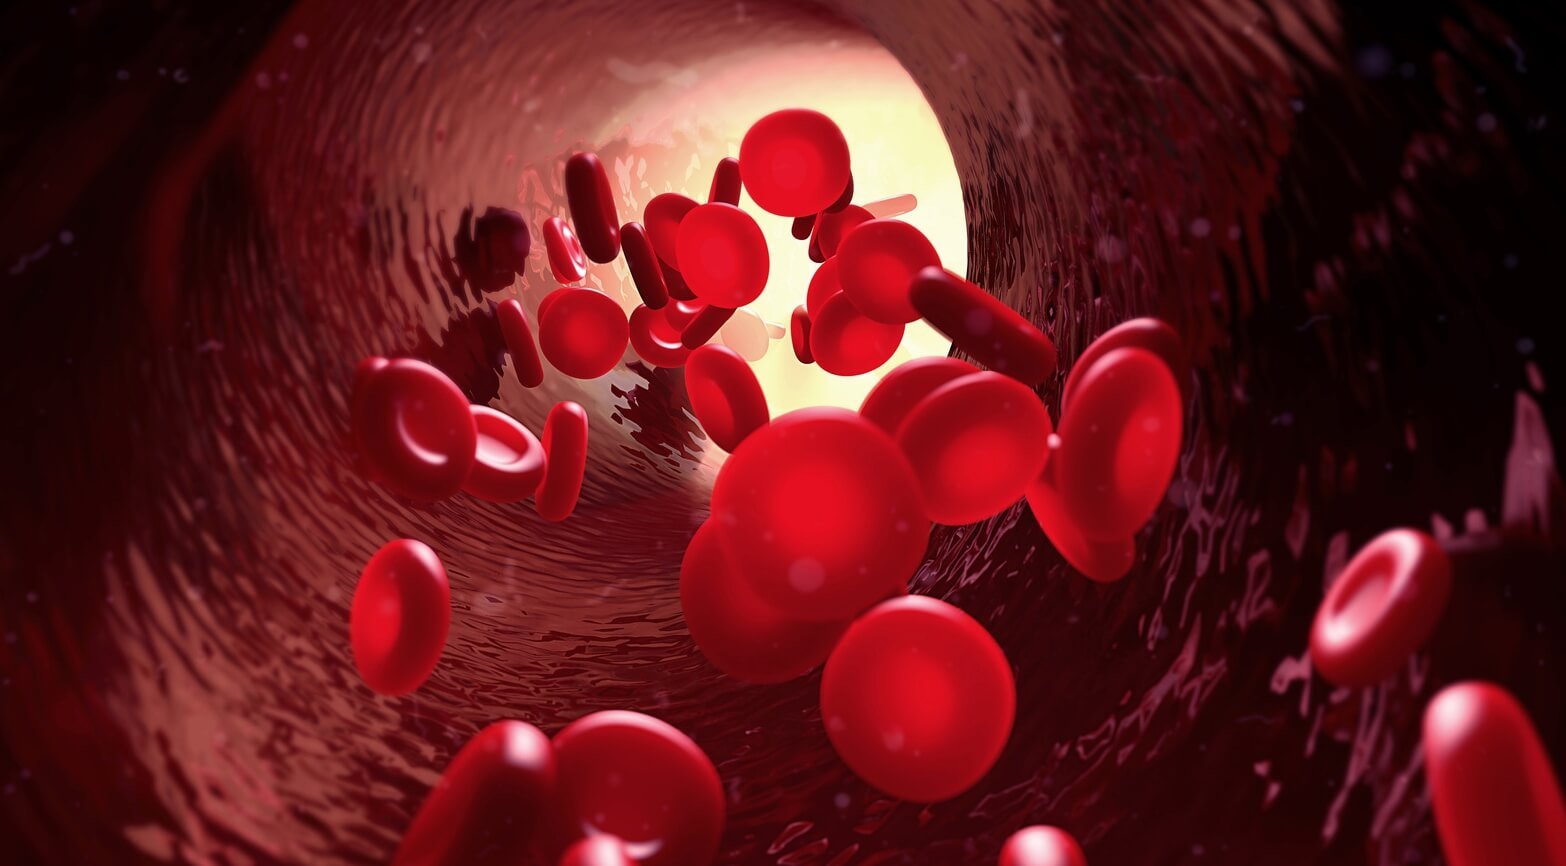 Группа крови человека может внезапно измениться: вот три главные причины. Существуют ситуации, при которых группа крови человека полностью меняется. Источник: naturemedclinic.com. Фото.